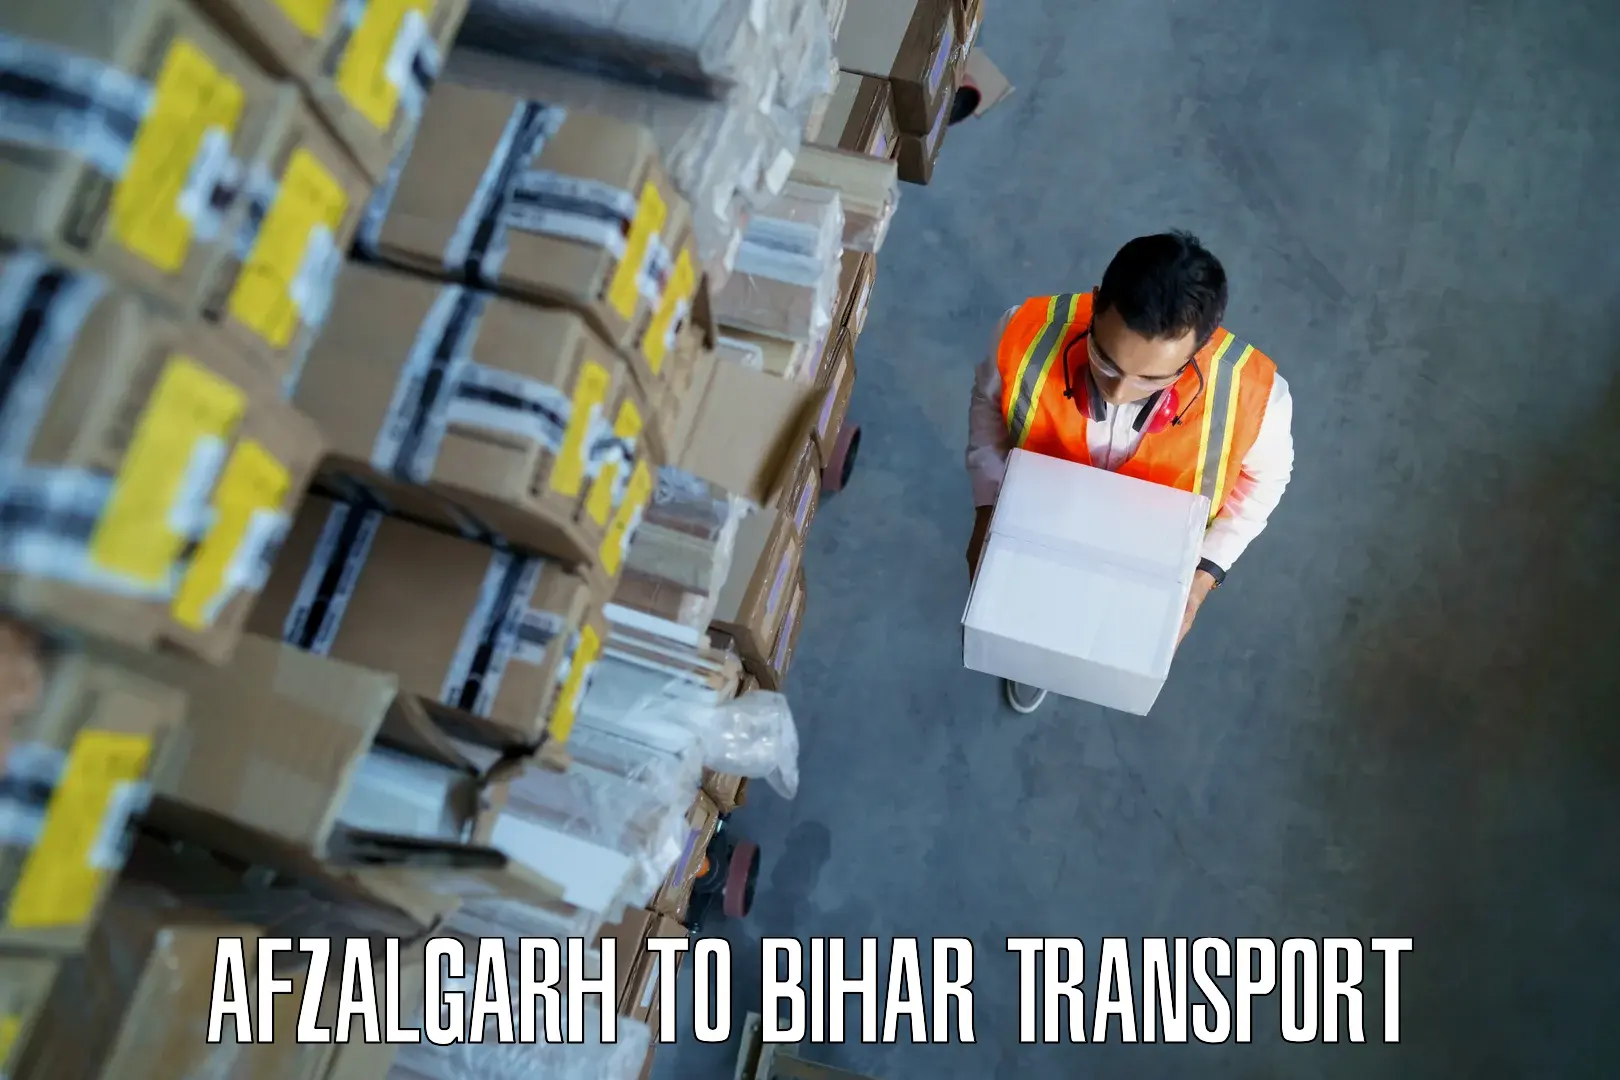 Bike shipping service Afzalgarh to Bihar